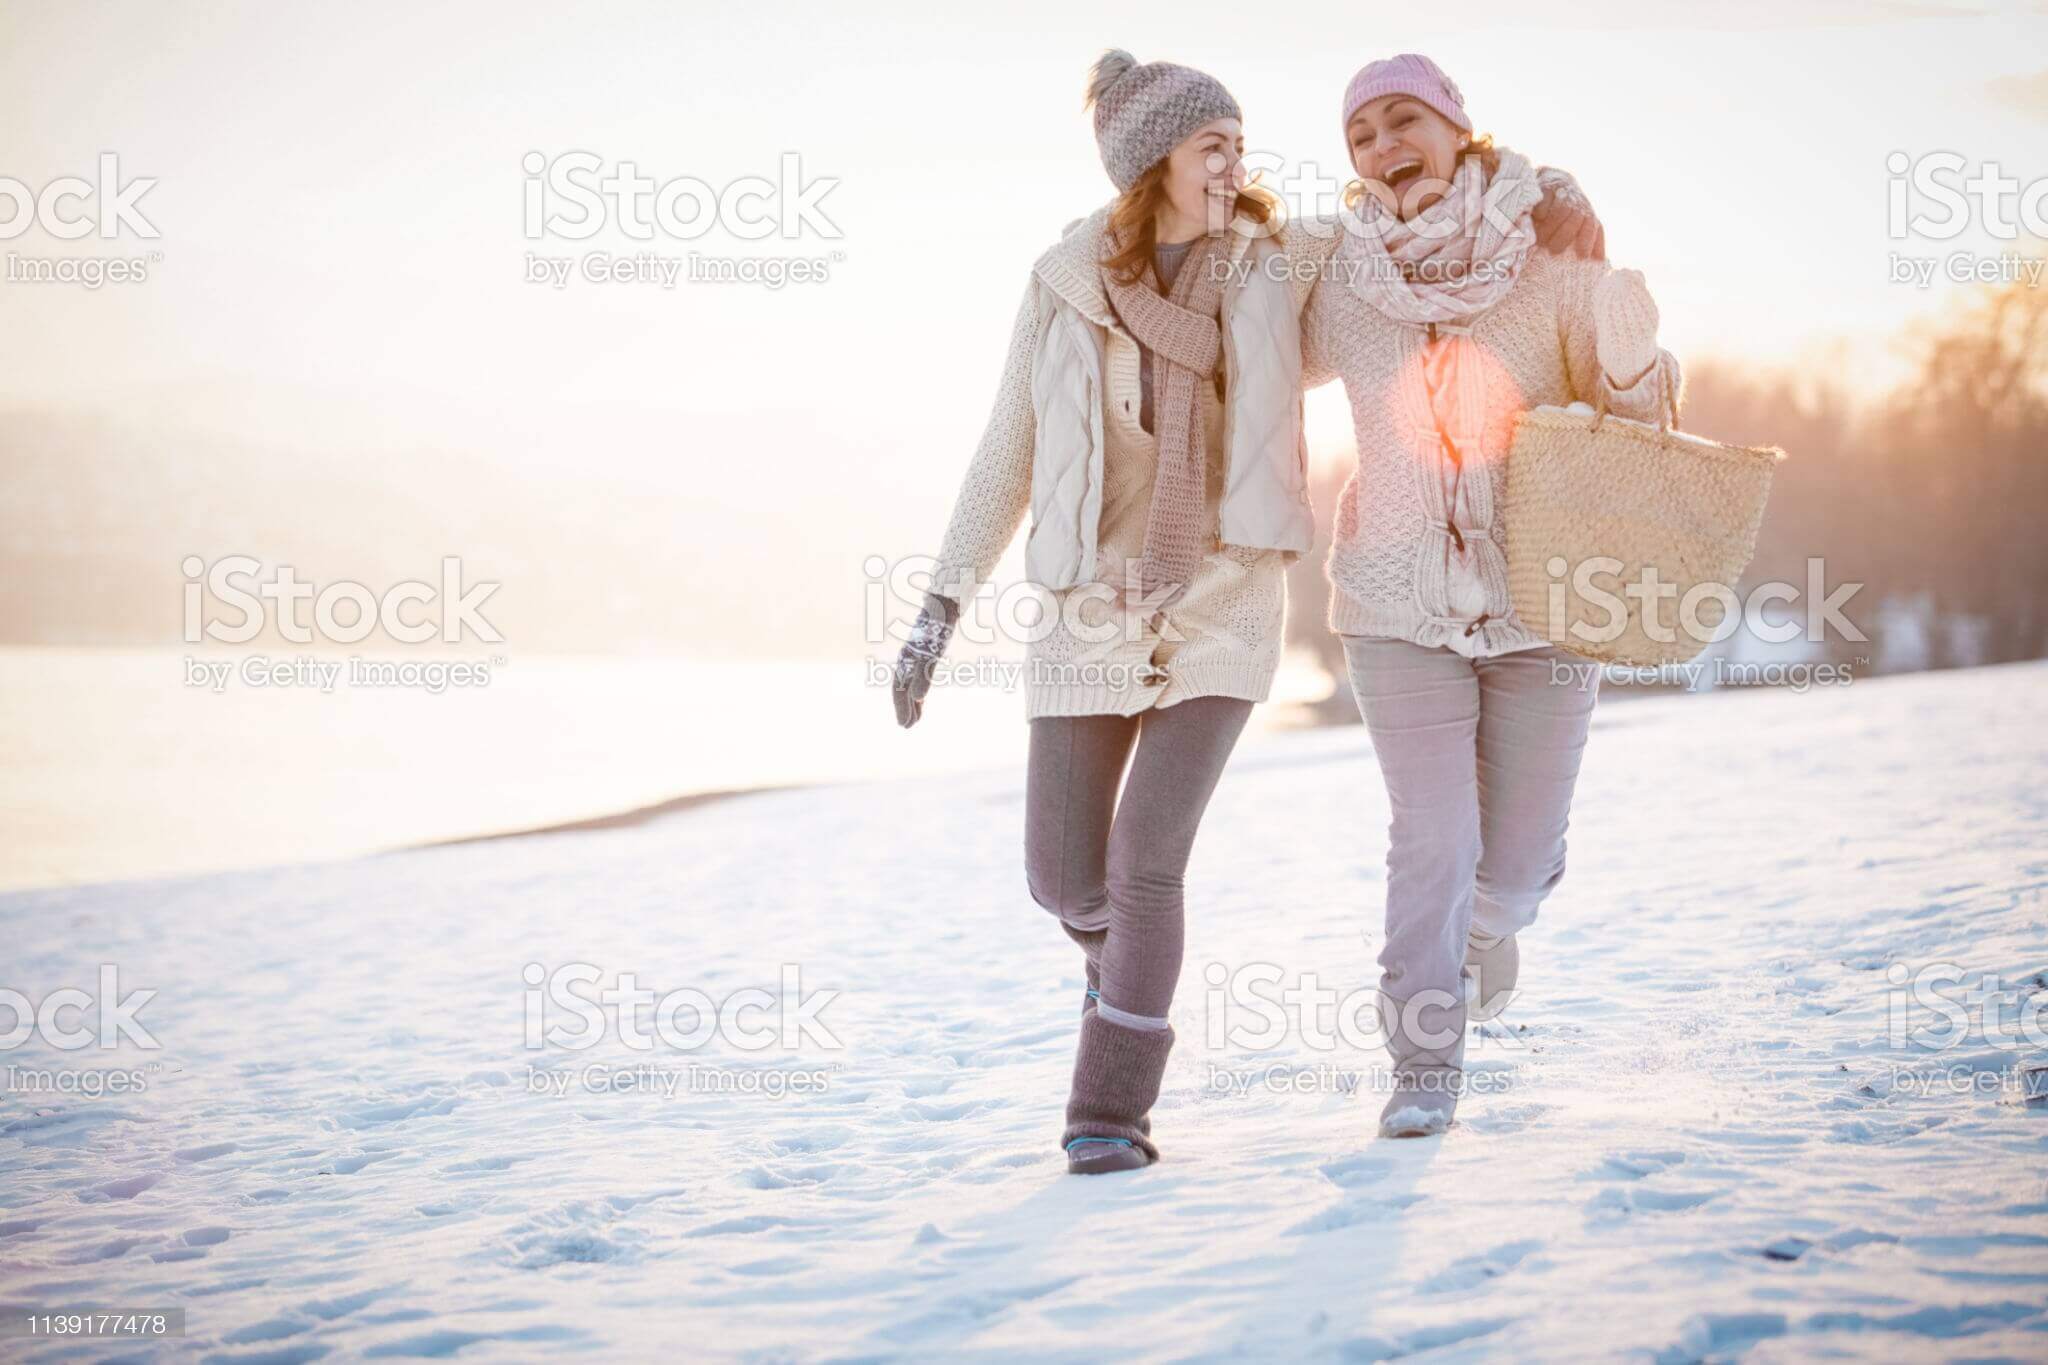 istockphoto - zwei Frauen gehen in Winterkleidung spazieren